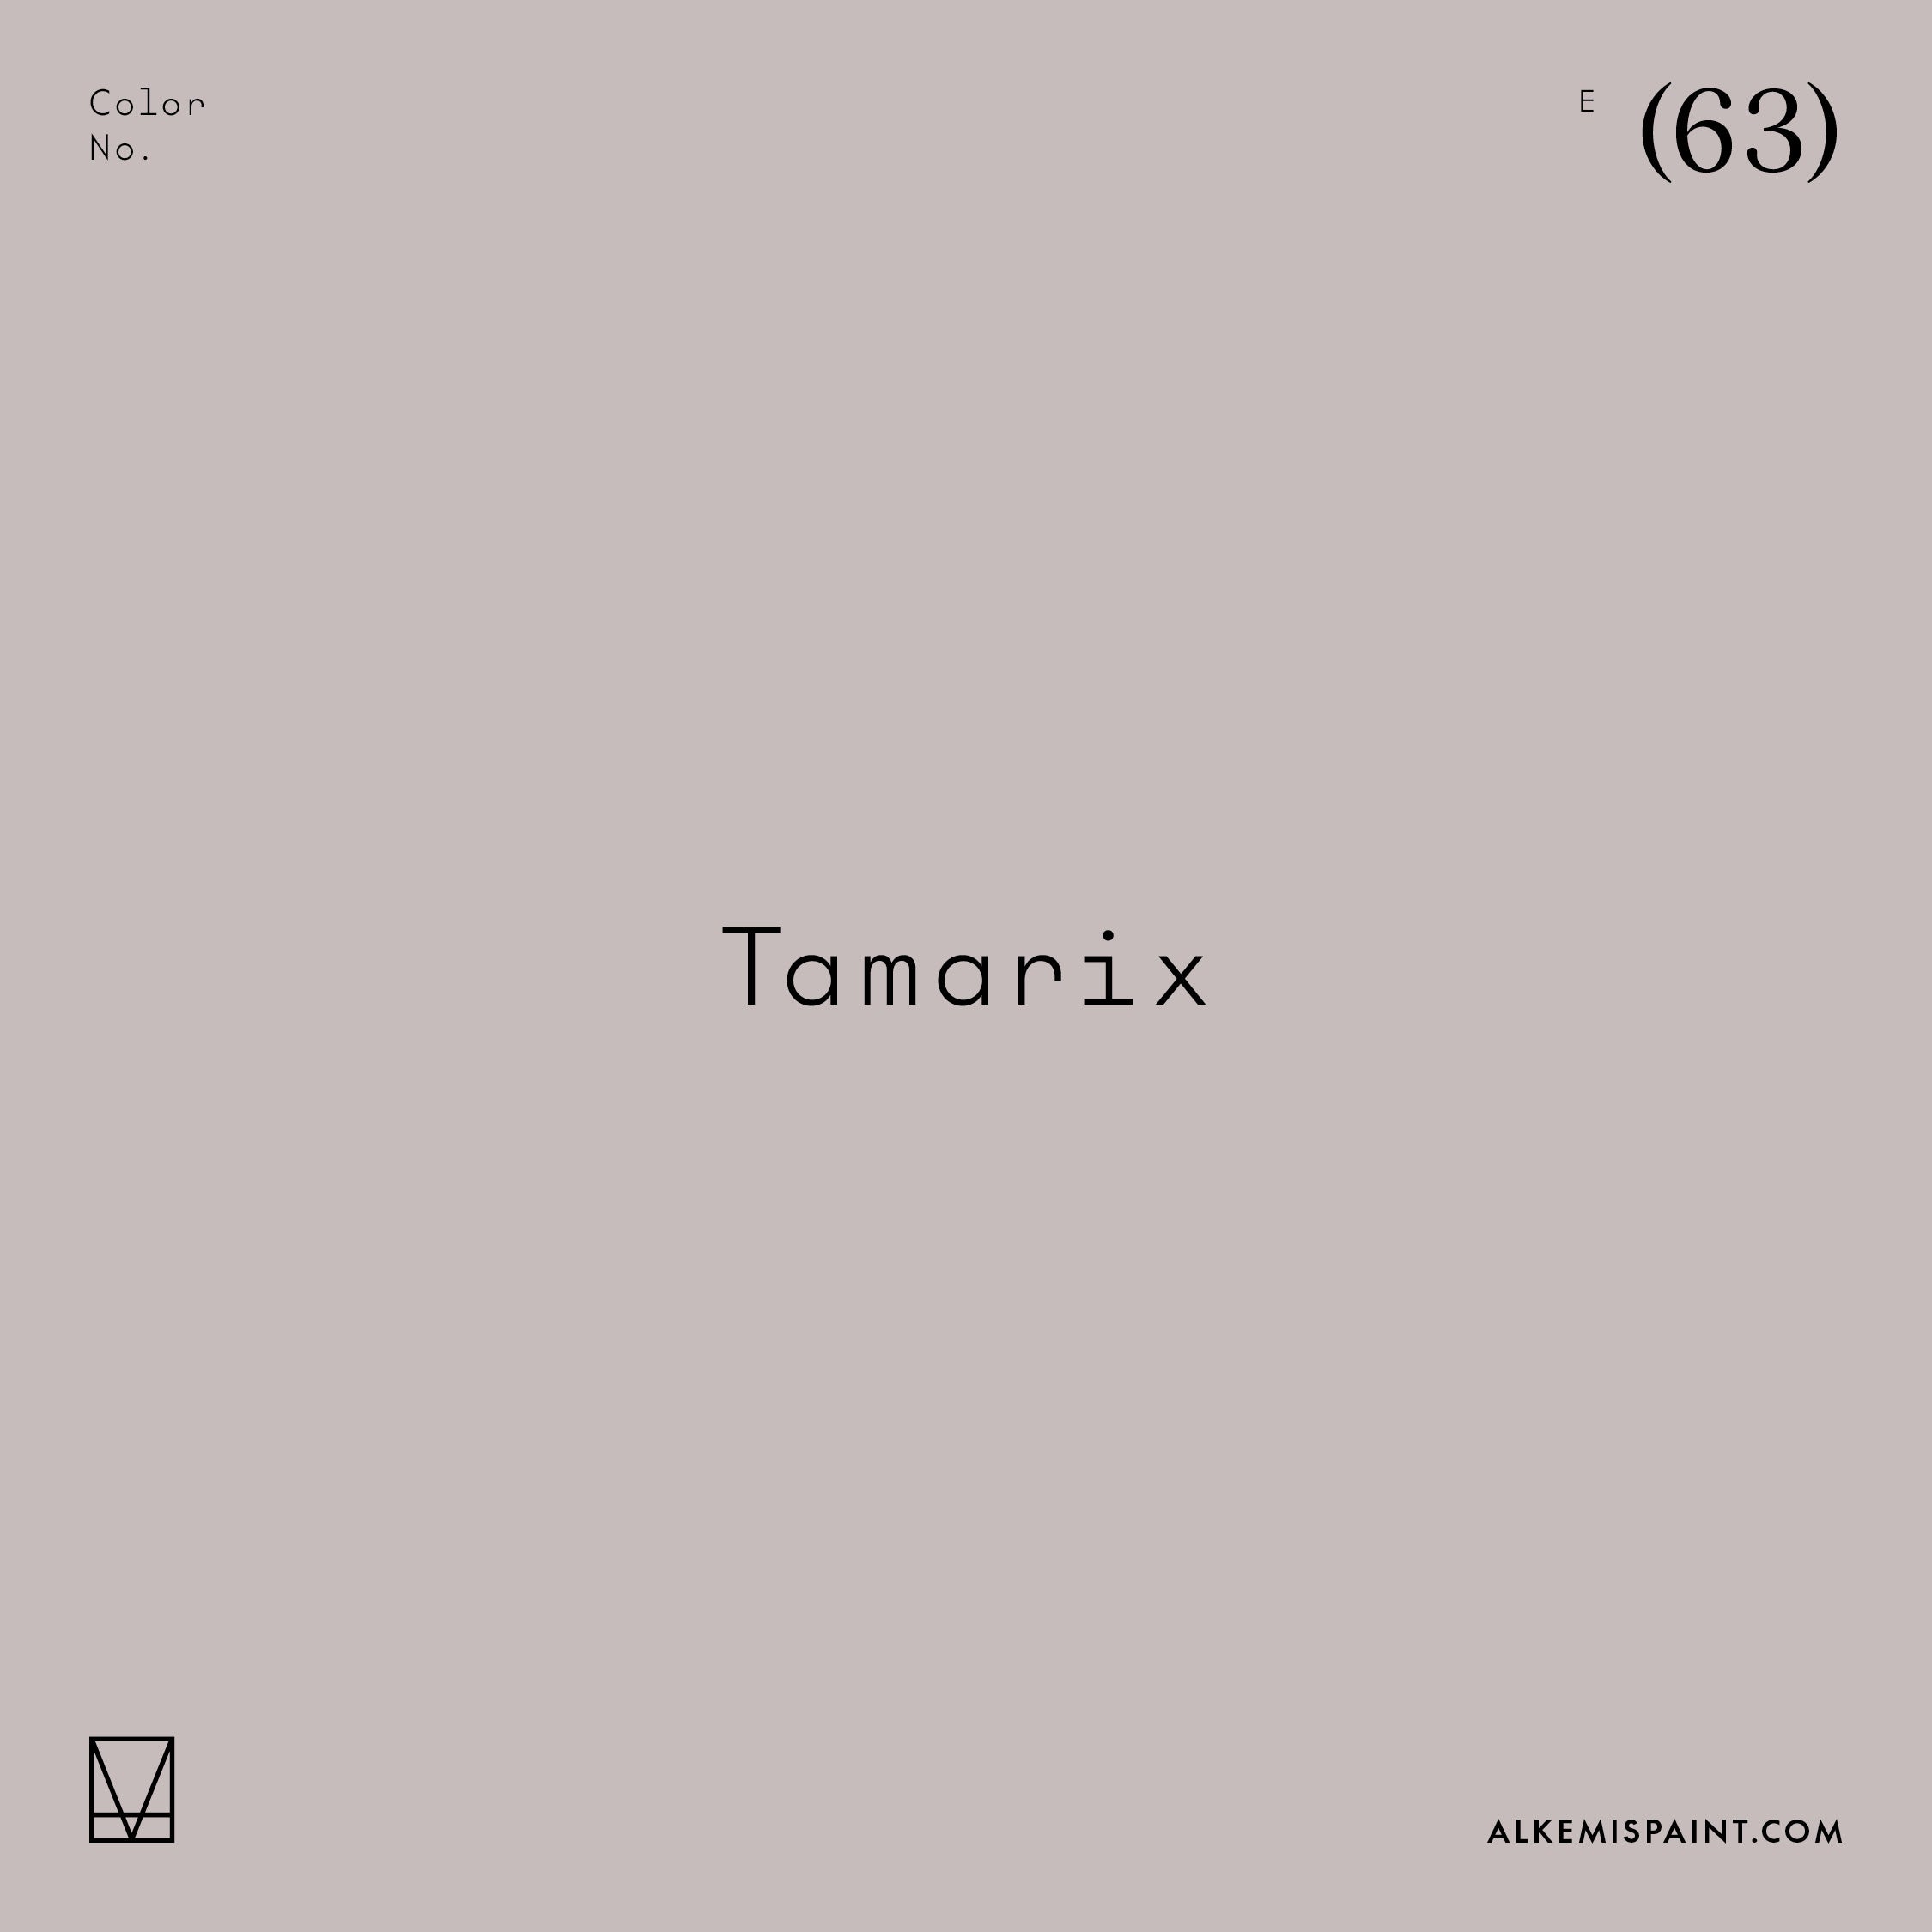 Tamarix (63)